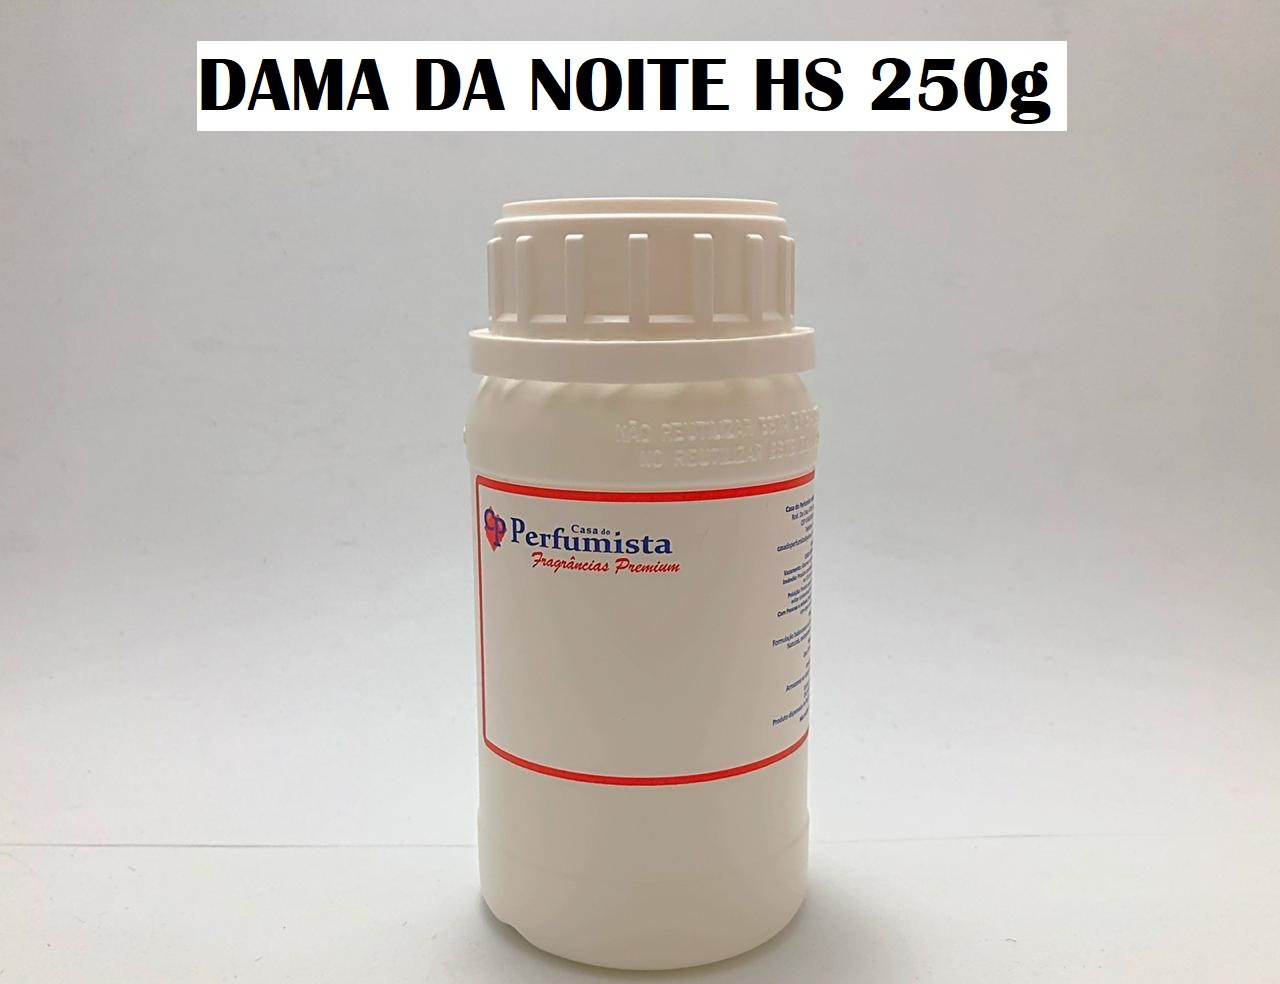 DAMA DA NOITE HS - 250g